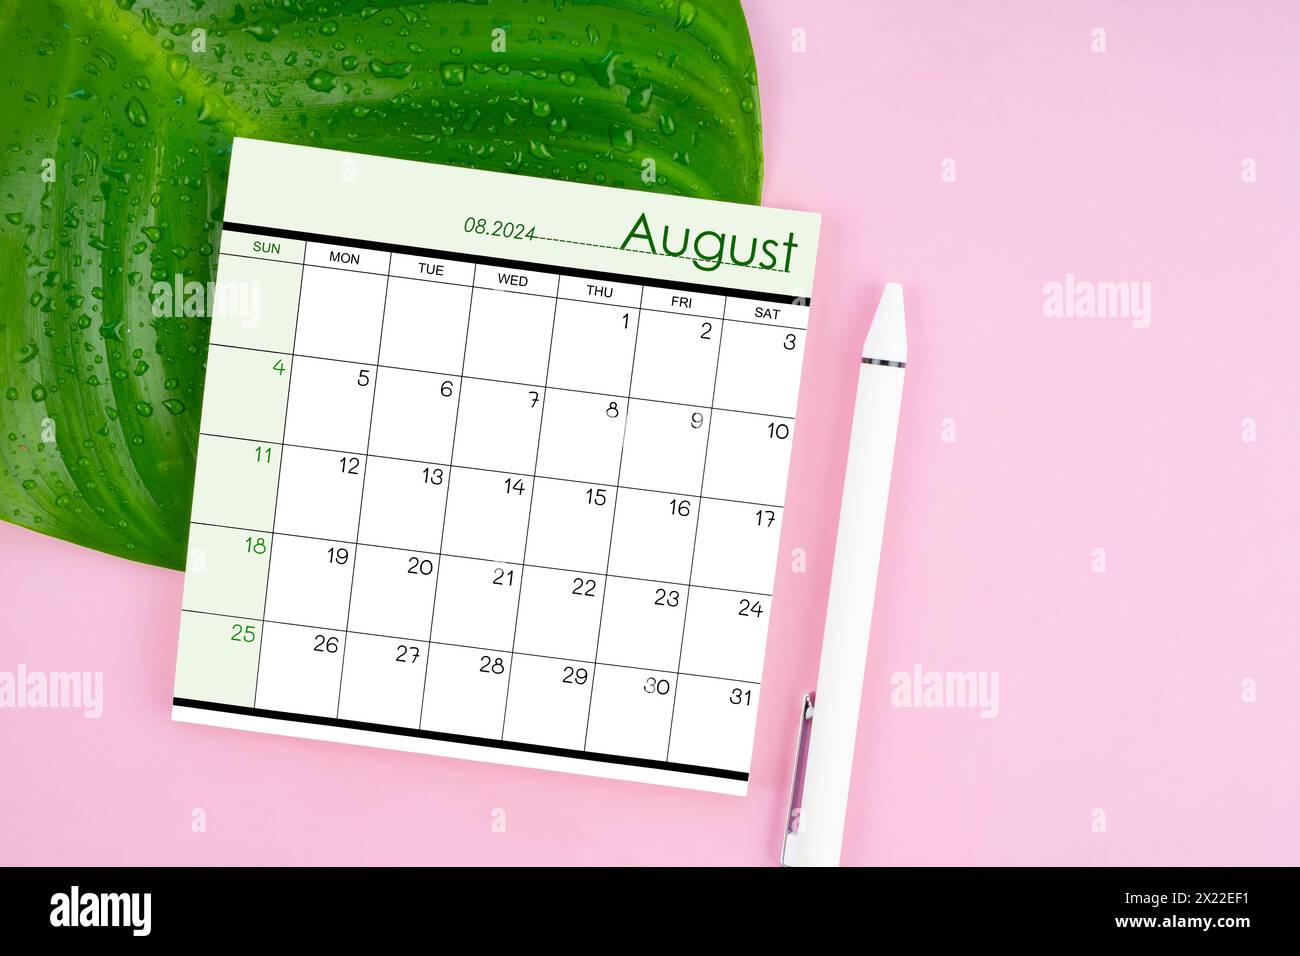 Août 2024 page de calendrier et feuille verte fraîche avec des gouttes d'eau sur fond de couleur rose. Banque D'Images